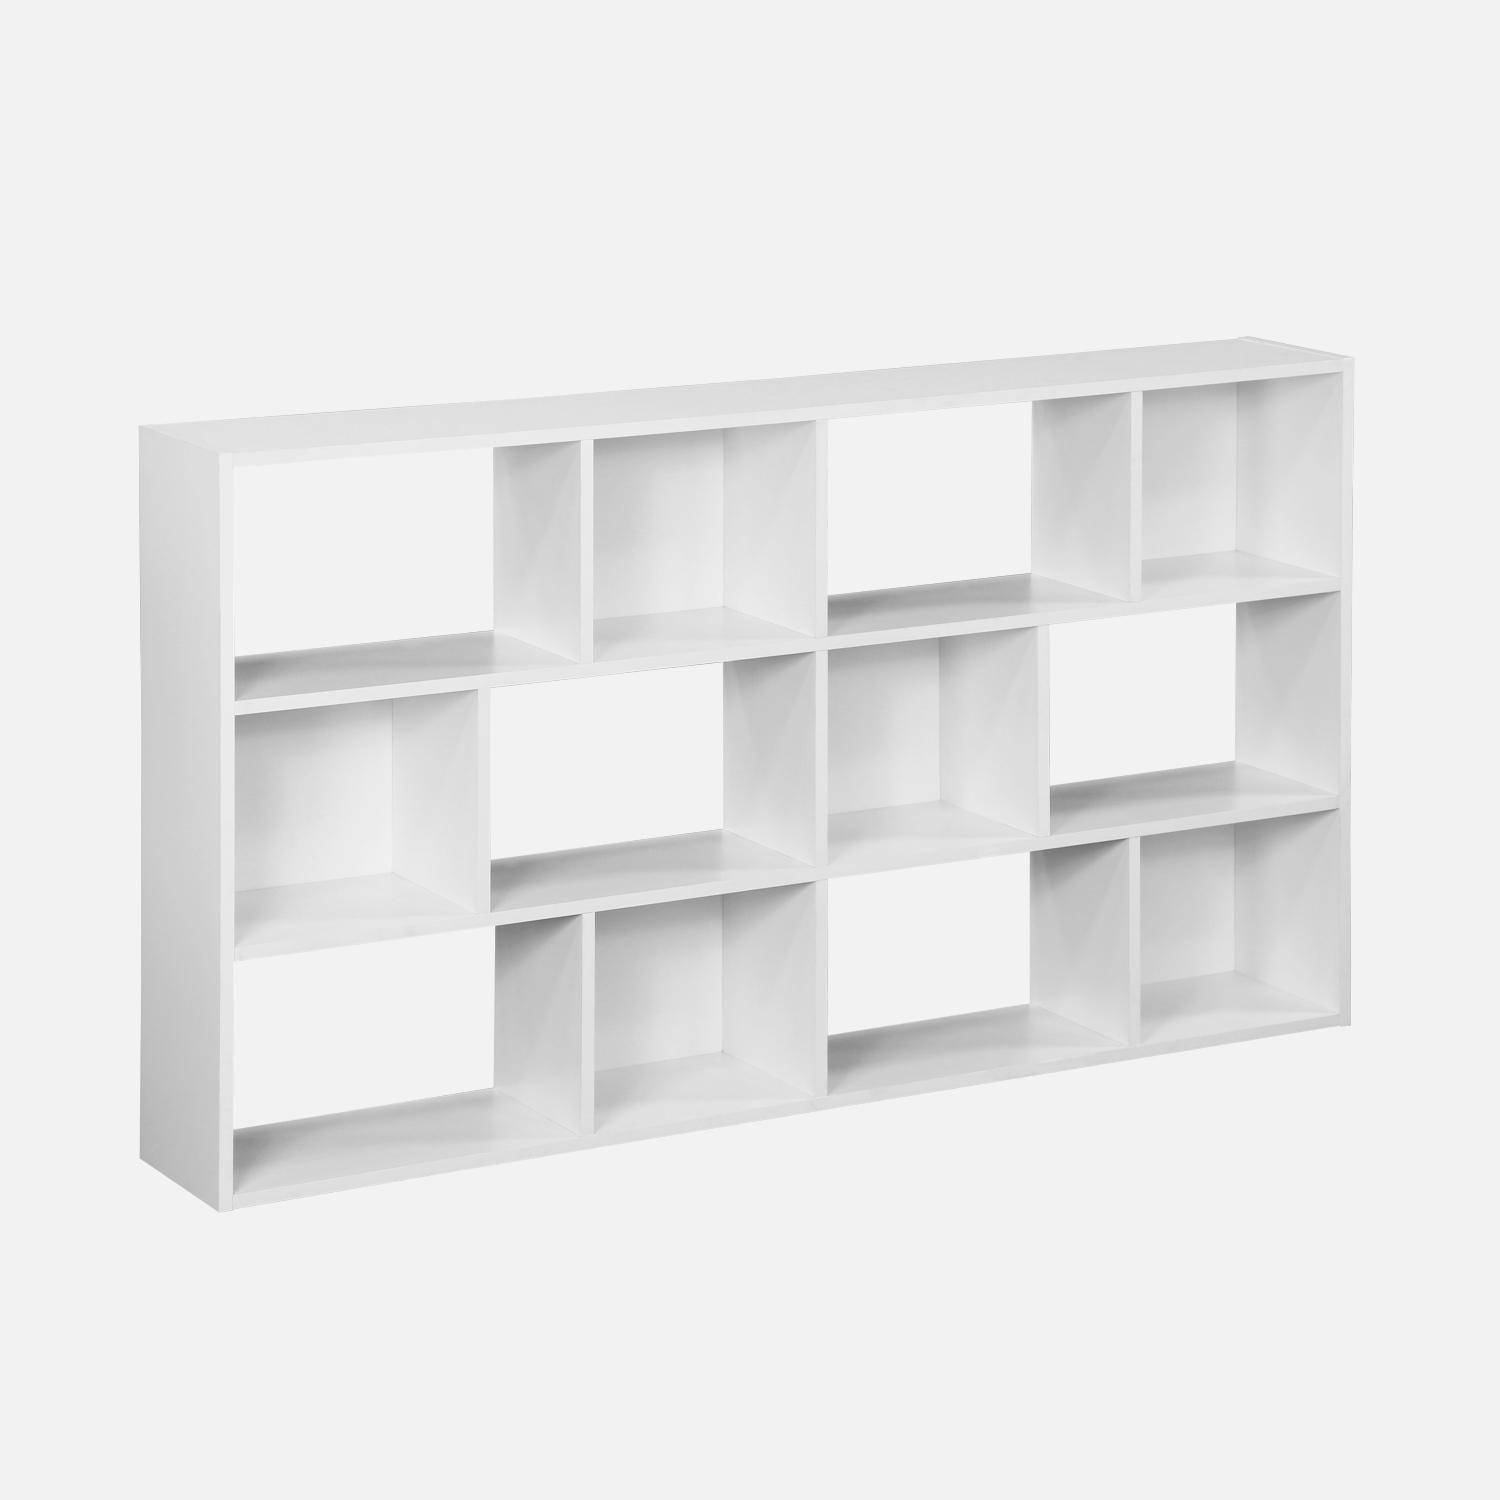 Bibliothèque design asymétrique blanche, Pieter, 3 étagères, 12 compartiments de rangement,sweeek,Photo1